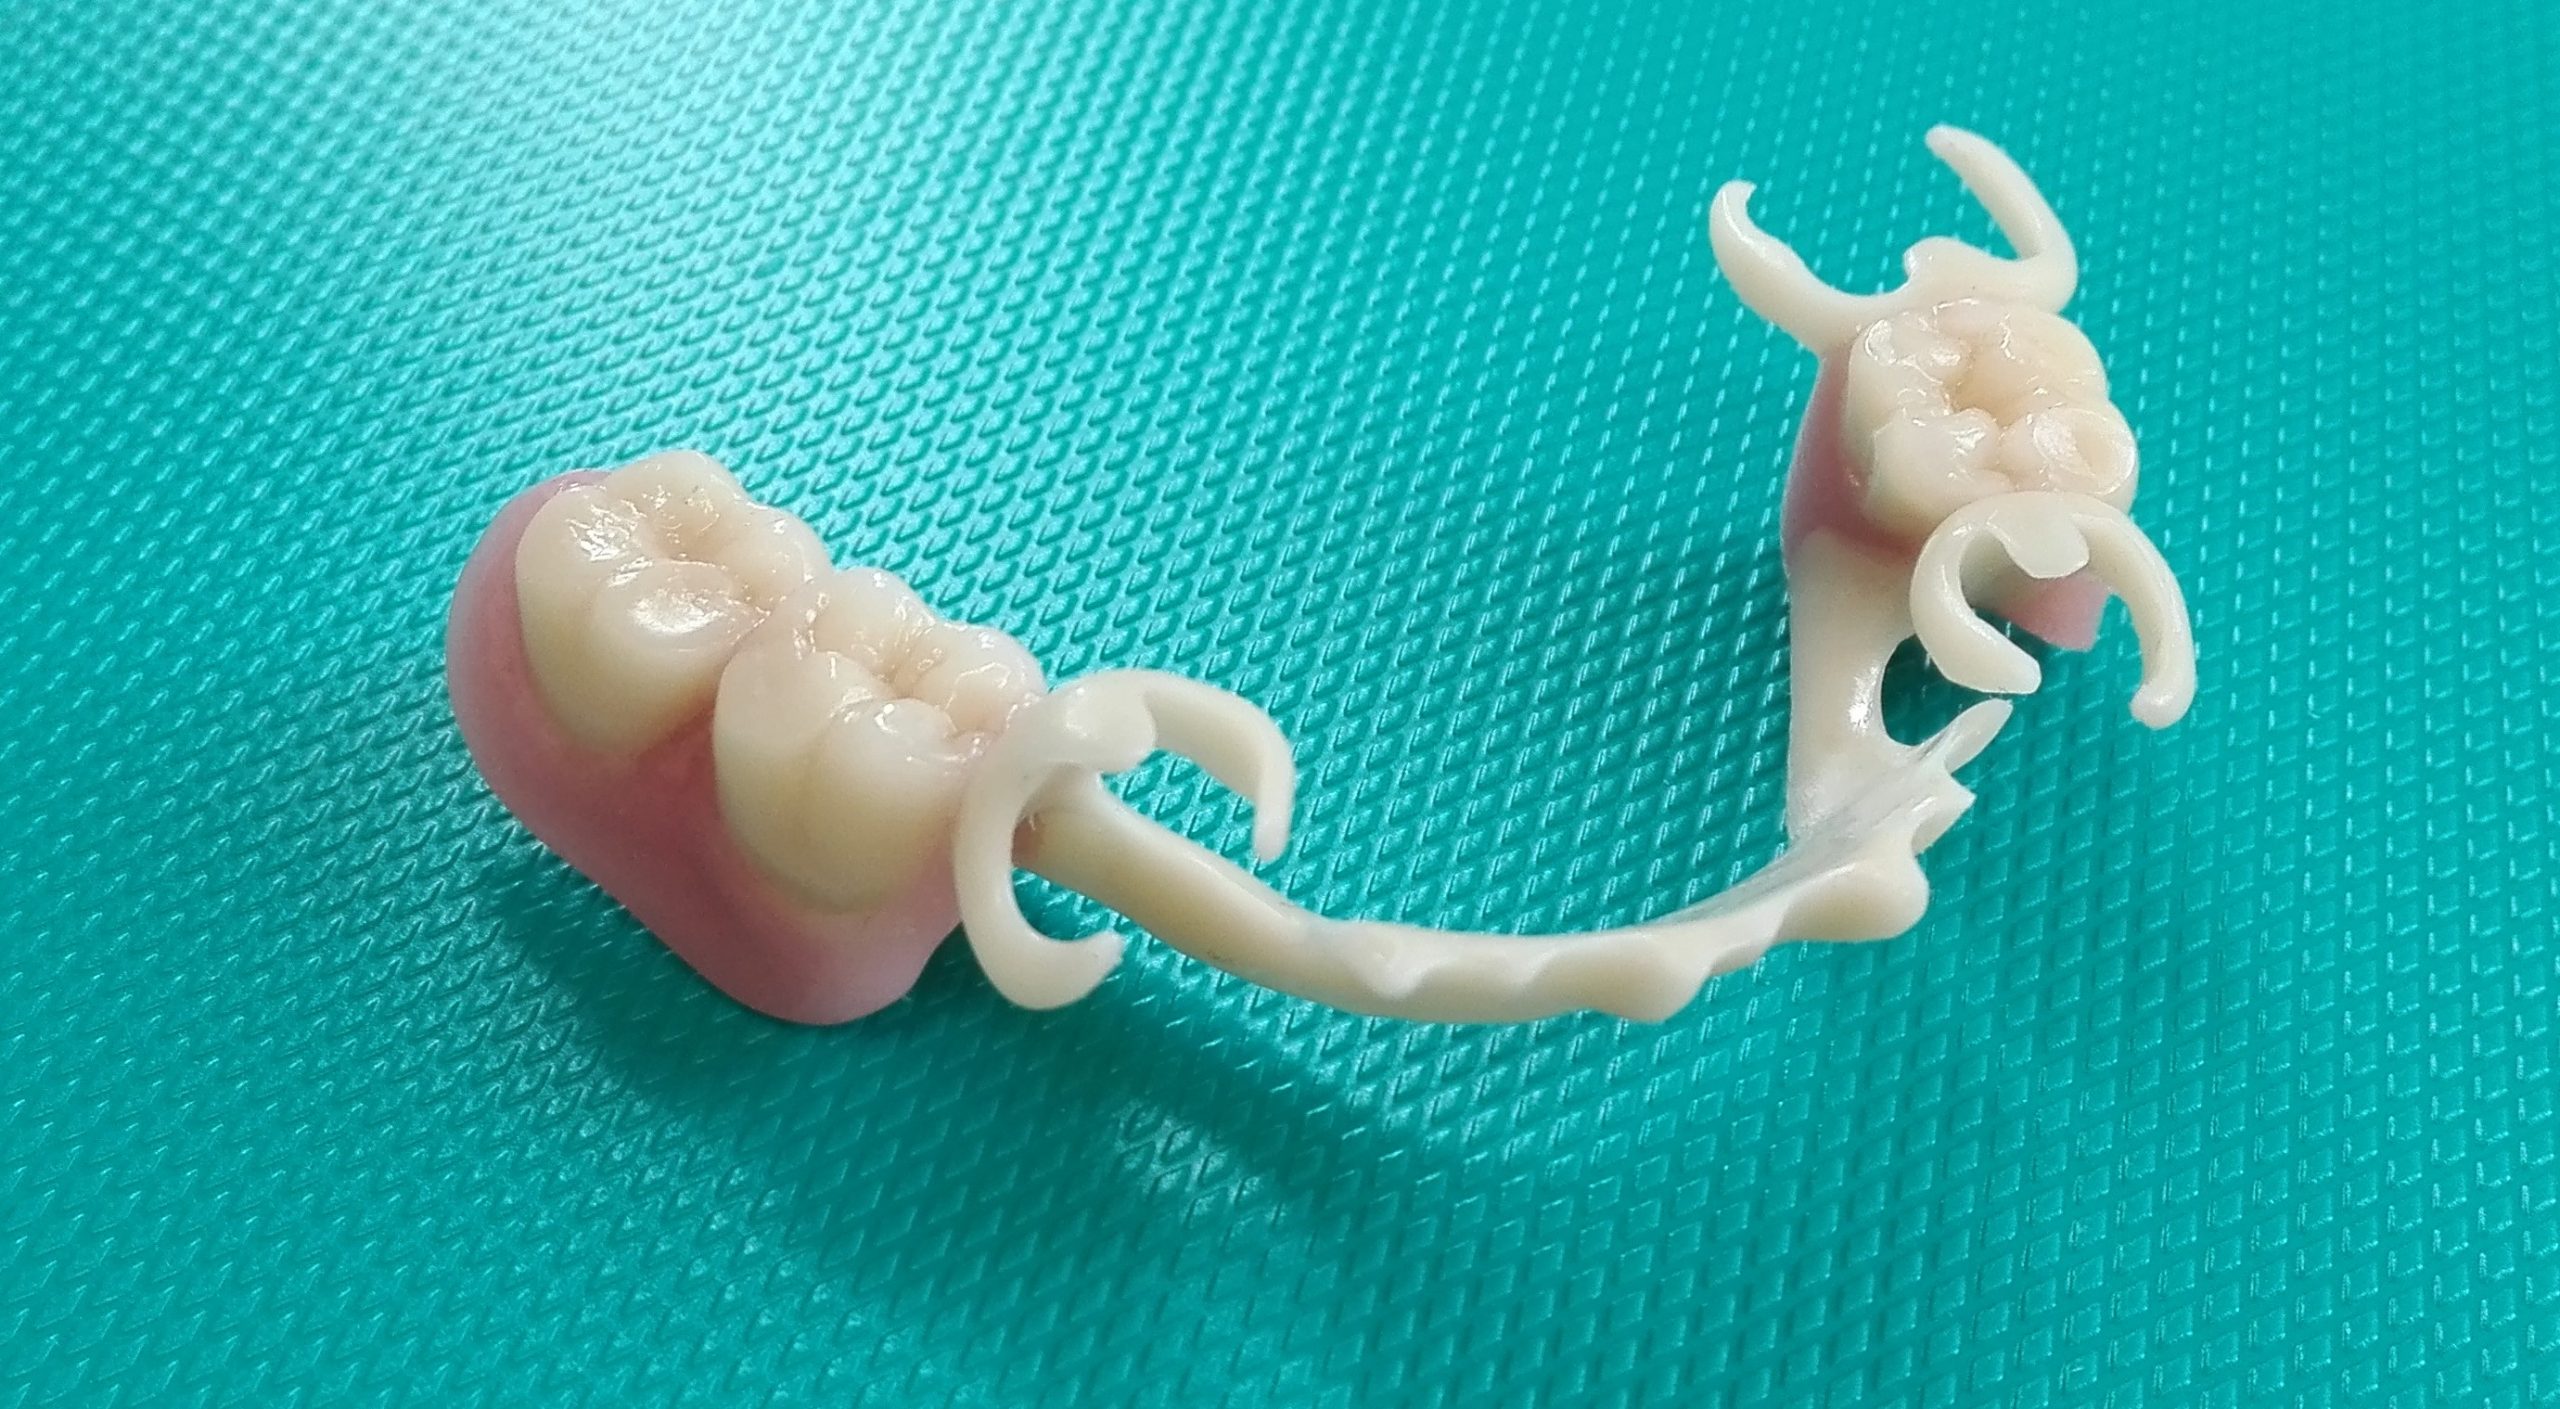 ganzheitliche Zahnheilkunde Dr. Heike Kretschmar - Zahnersatz mit Biocetalklammern